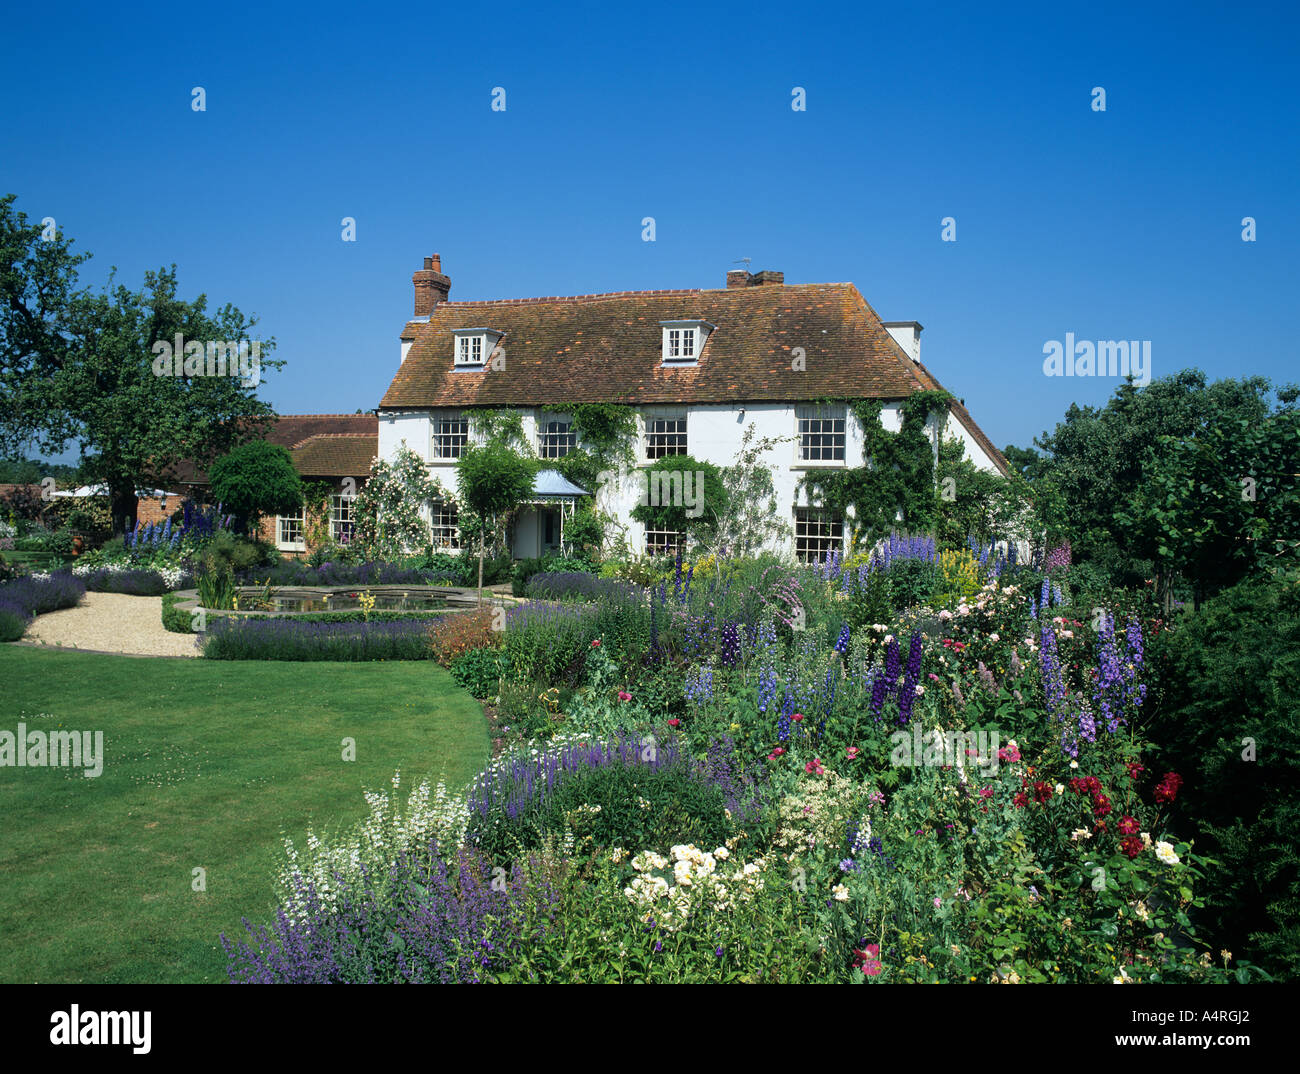 Maison de campagne et jardin en été, en Angleterre. Banque D'Images